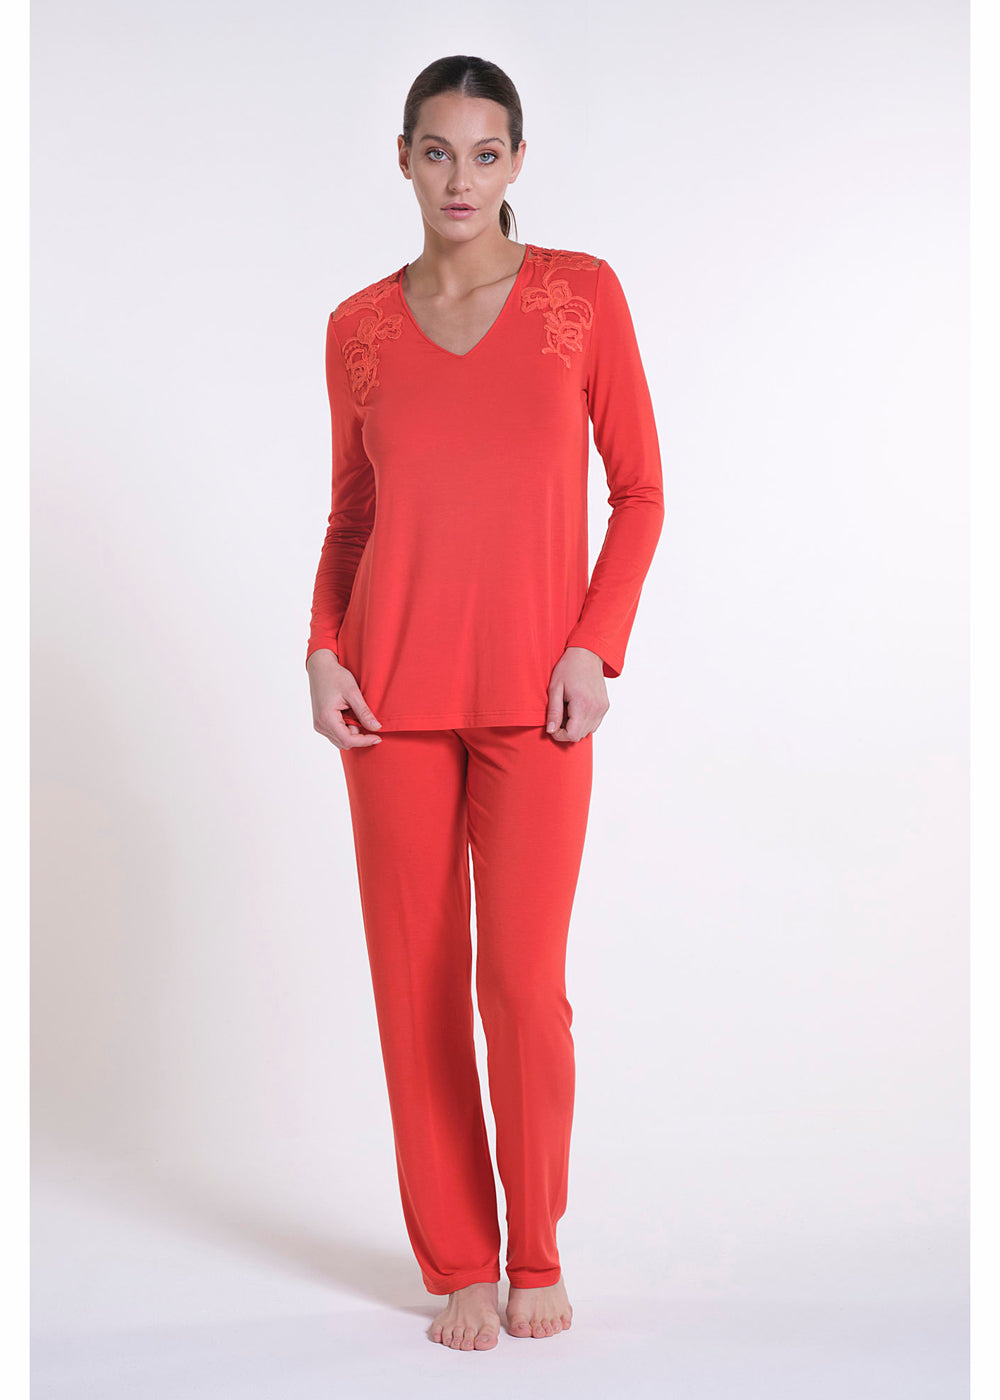 Verdiani langer Schlafanzug orange aus Modal mit Jugendstil-Spitzenbesatz weich